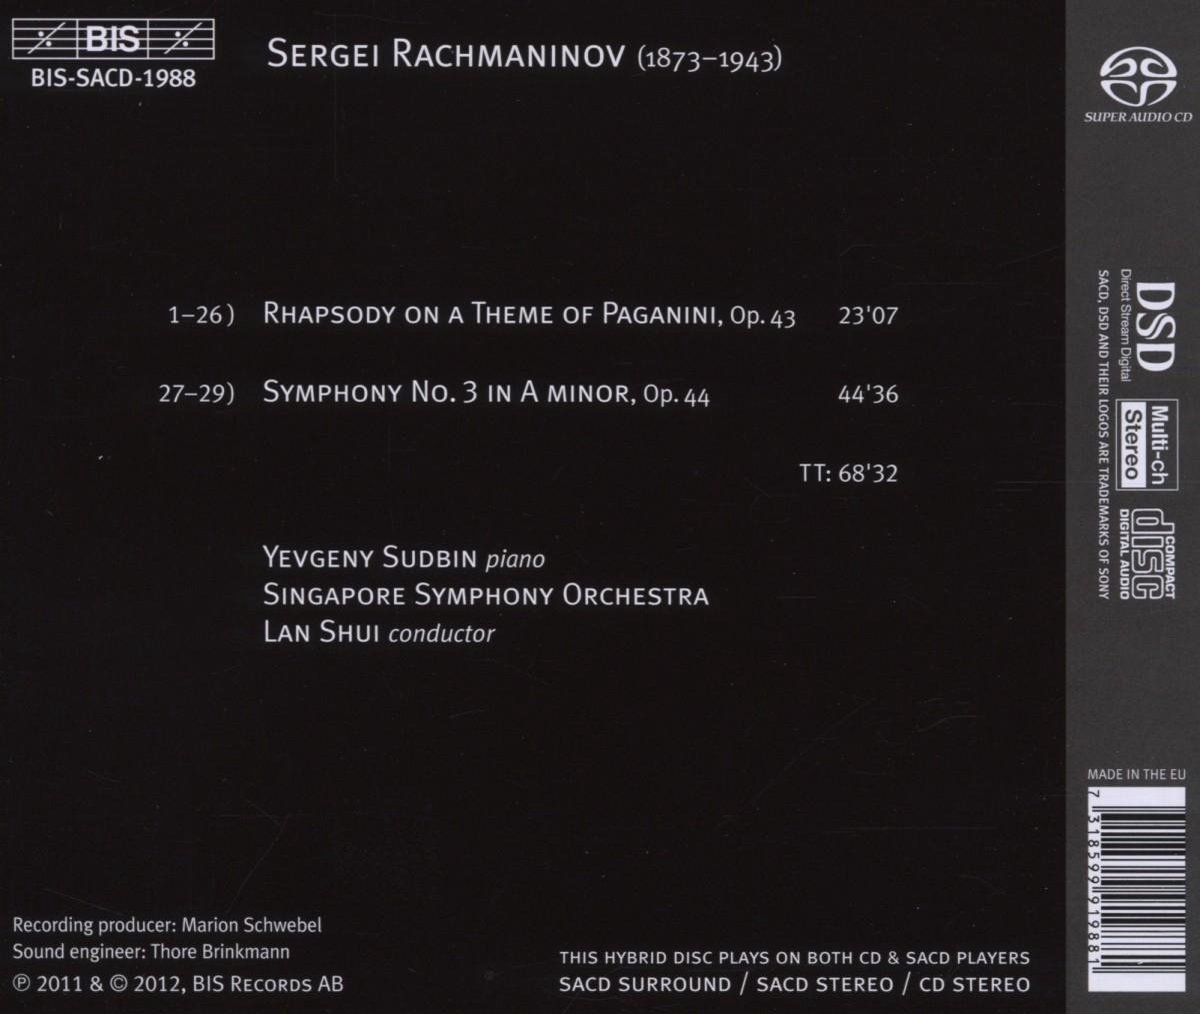 Yevgeny Sudbin 라흐마니노프: 교향곡 3번, 파가니니 주제에 의한 랩소디 (Rachmaninov: Symphony No.3, Paganini Rhapsody)